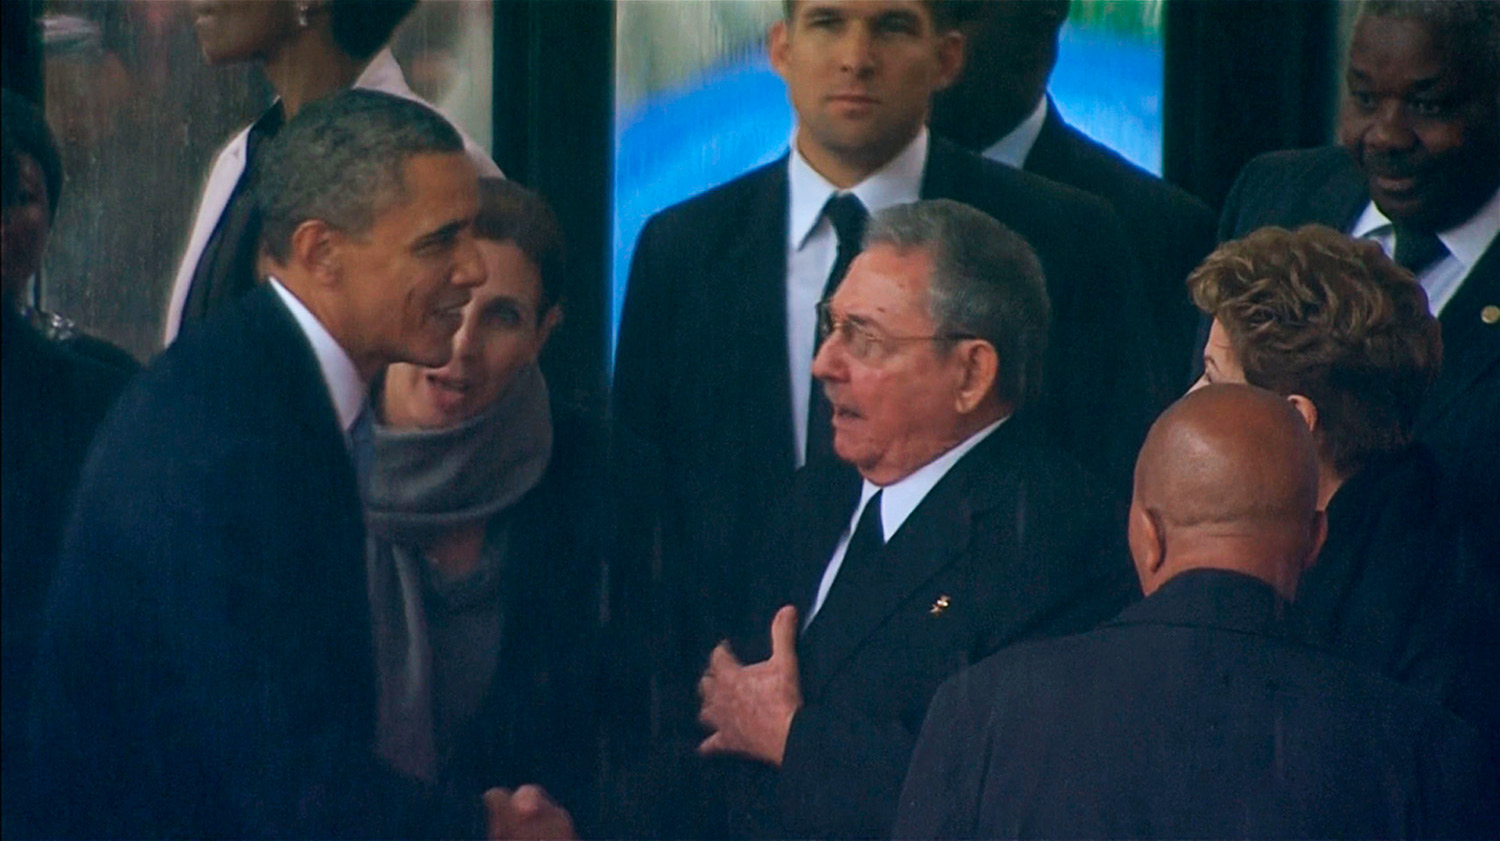 Obama y Raúl Castro hablaron por teléfono sobre normalización de relaciones